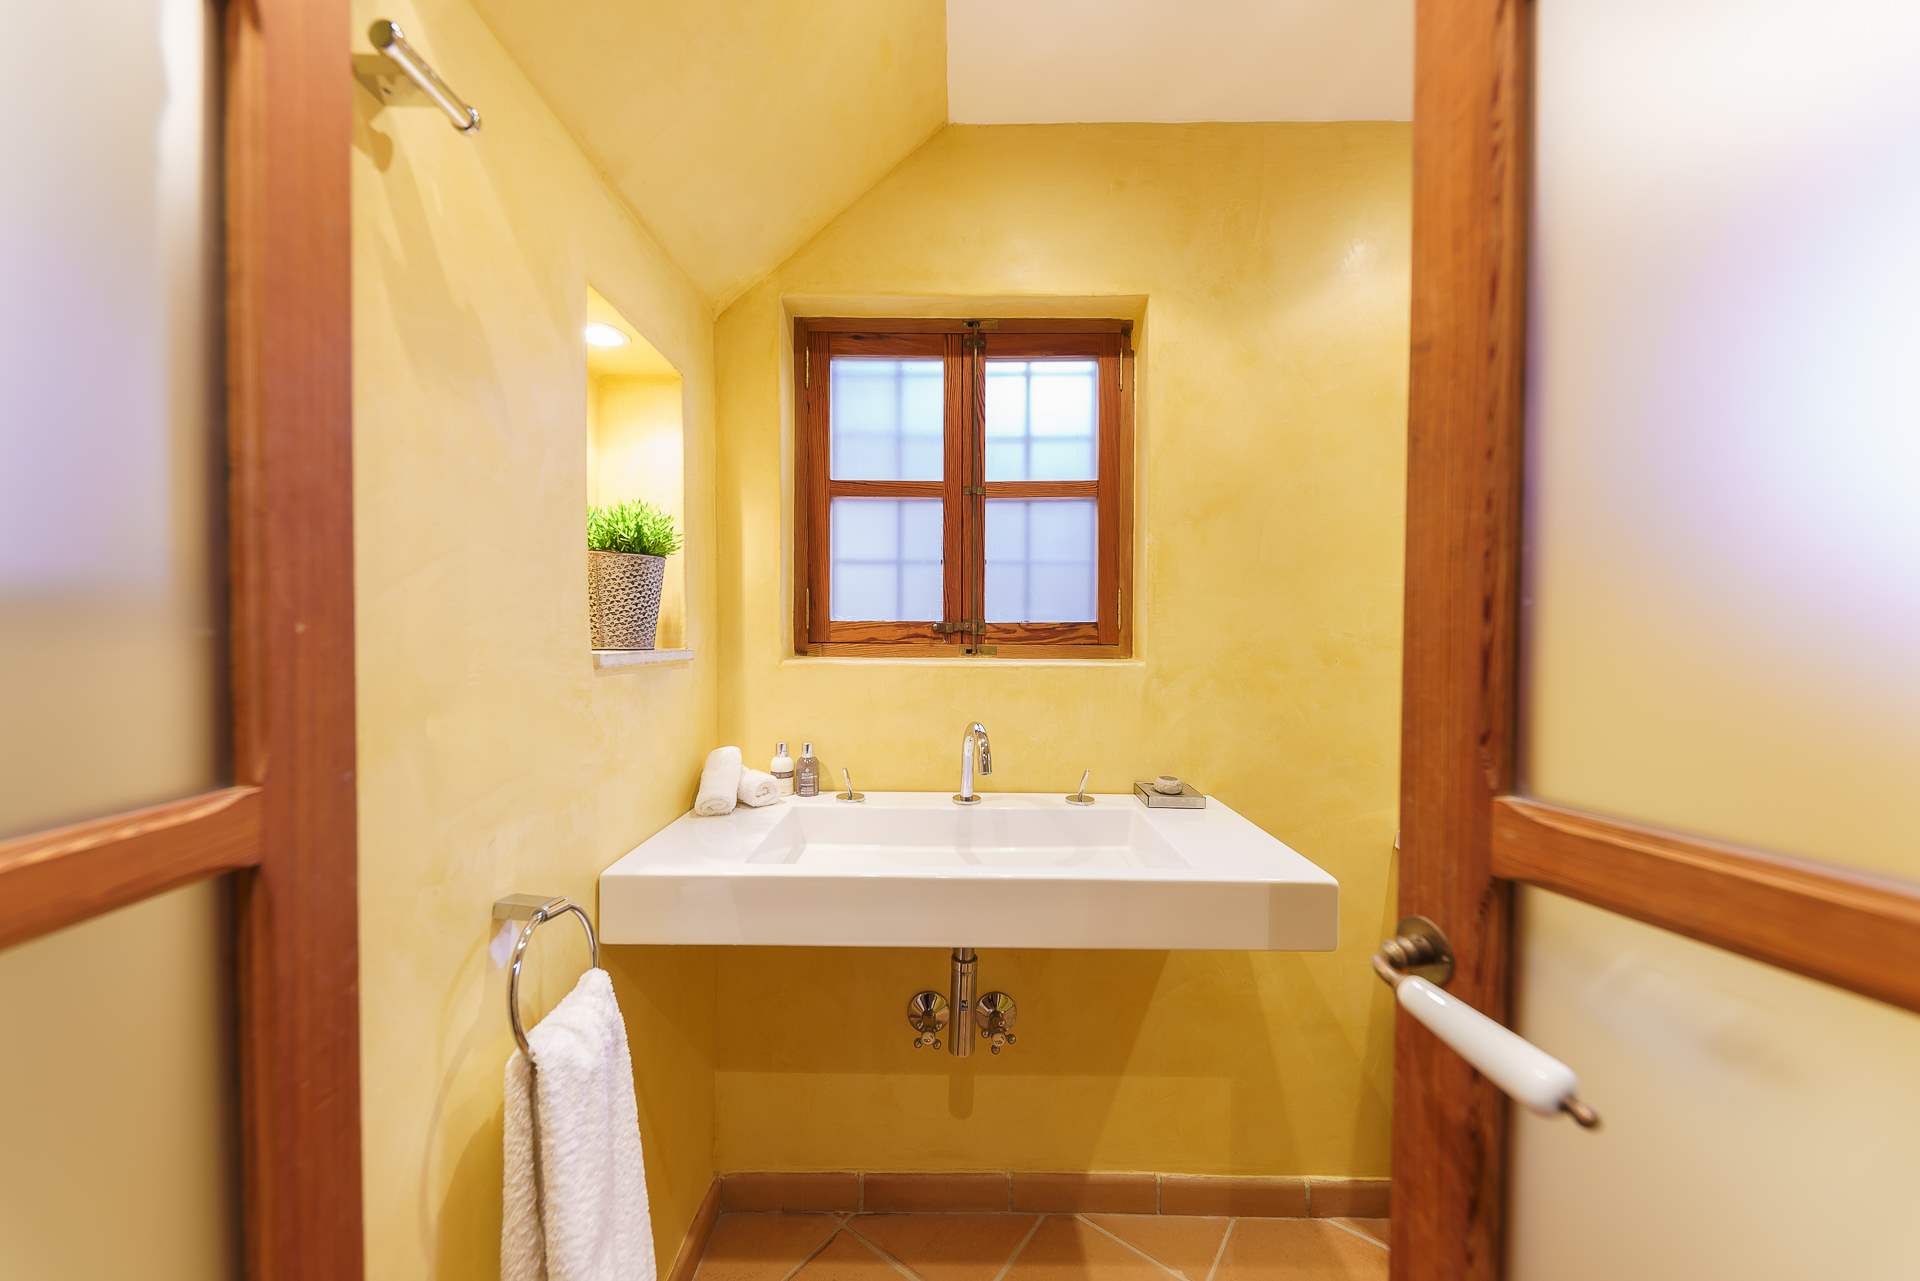 Sa Tanca, 4 Bedroom Rental, 4 bedroom villa in Soller & Deia, Majorca Photo #32